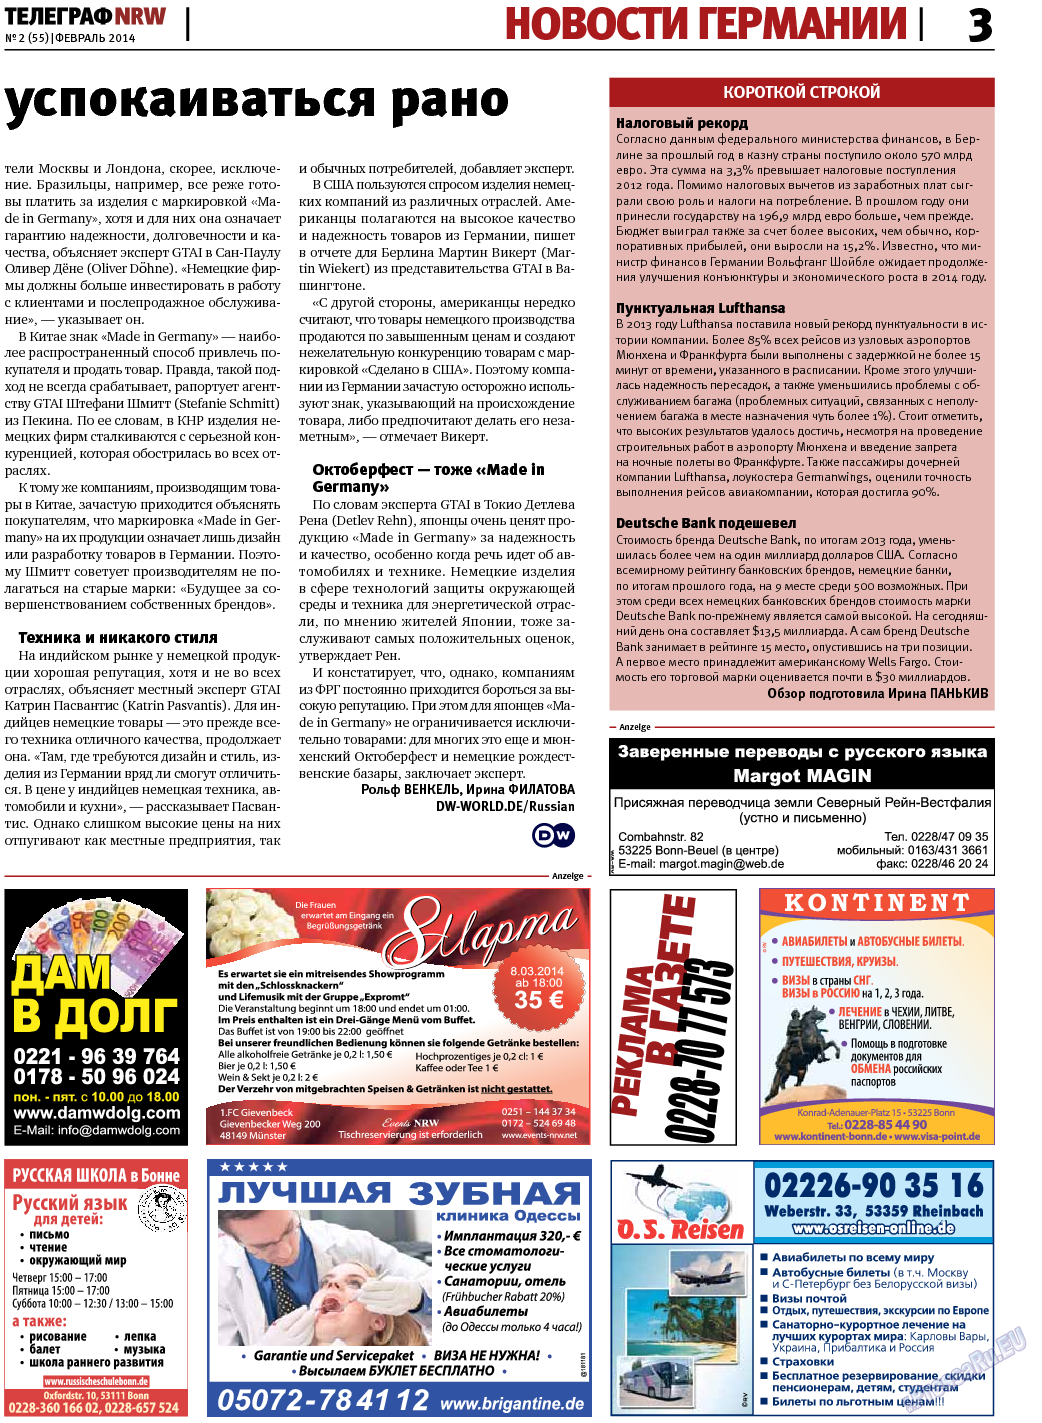 Телеграф NRW (газета). 2014 год, номер 2, стр. 3